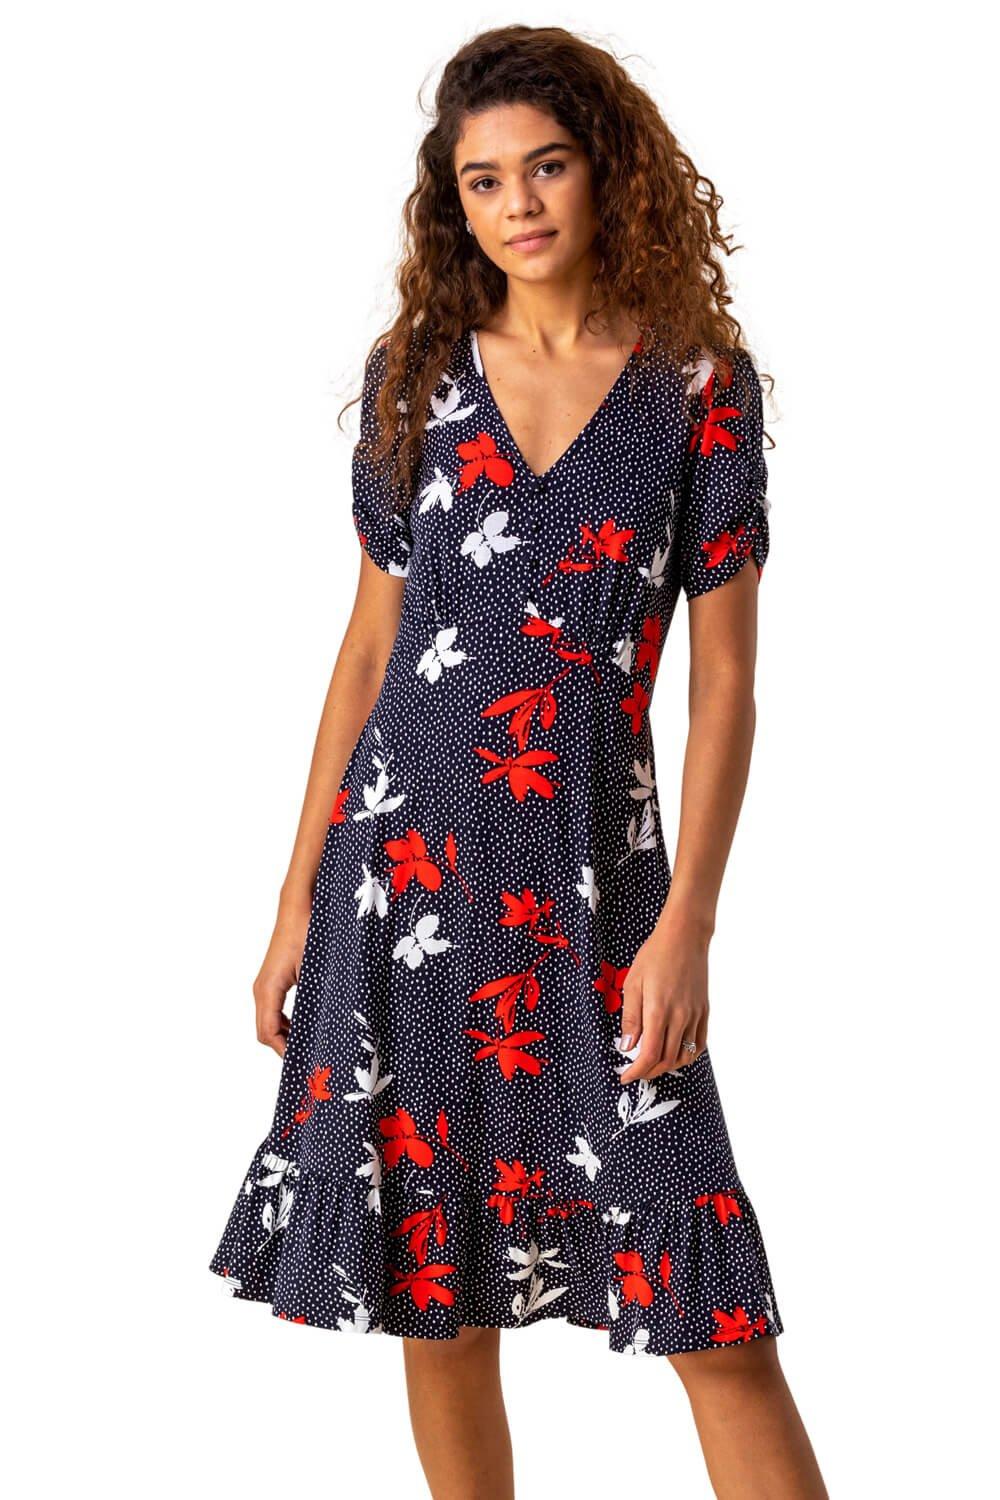 Эластичное платье с оборками и цветочным принтом Roman, синий женское шифоновое платье с цветочным принтом v образным вырезом и оборками